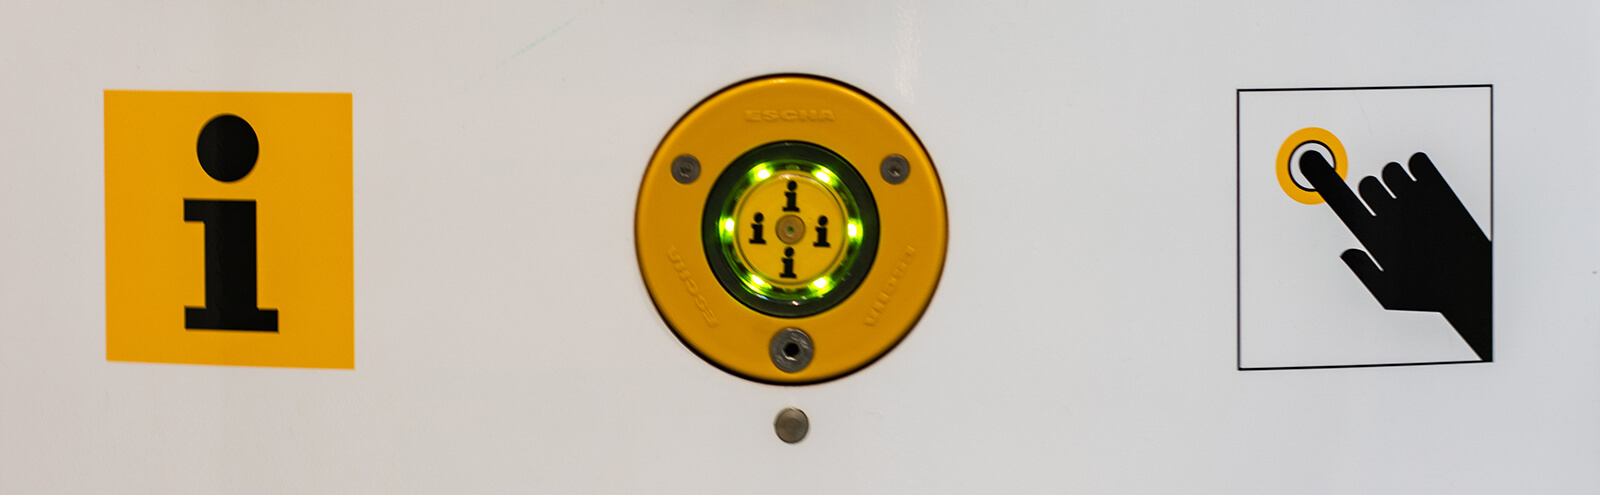 Bildausschnitt der Notruf- und Informationssäule, der den gelben Infoknopf in Nahaufnahme zeigt